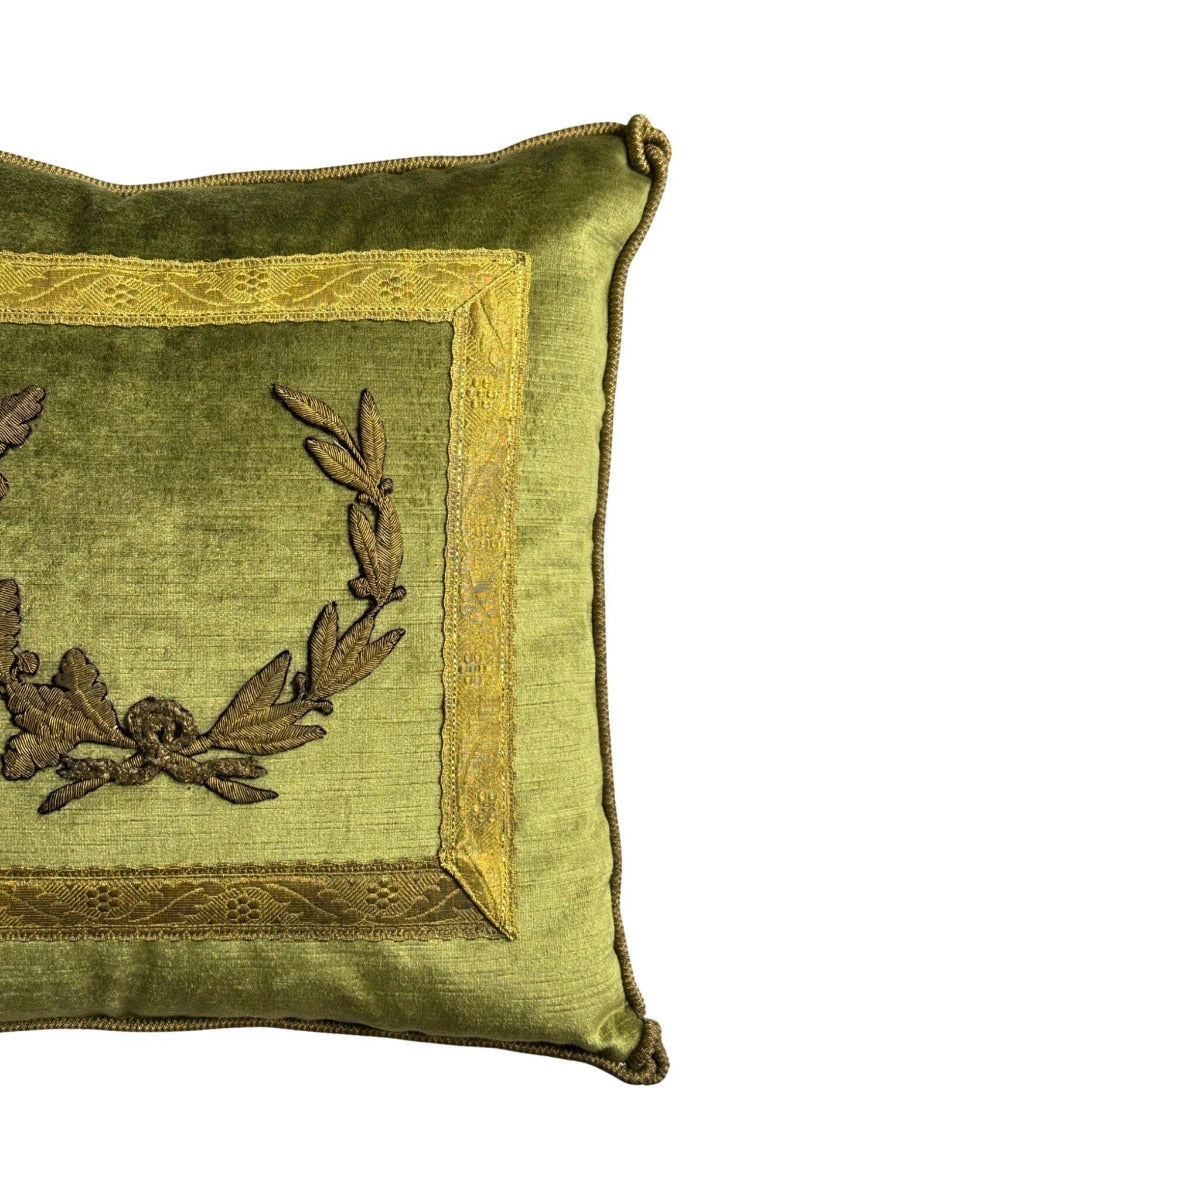 Antique European Raised Gold Metallic Embroidery Pillow (#E060423 | 16x16